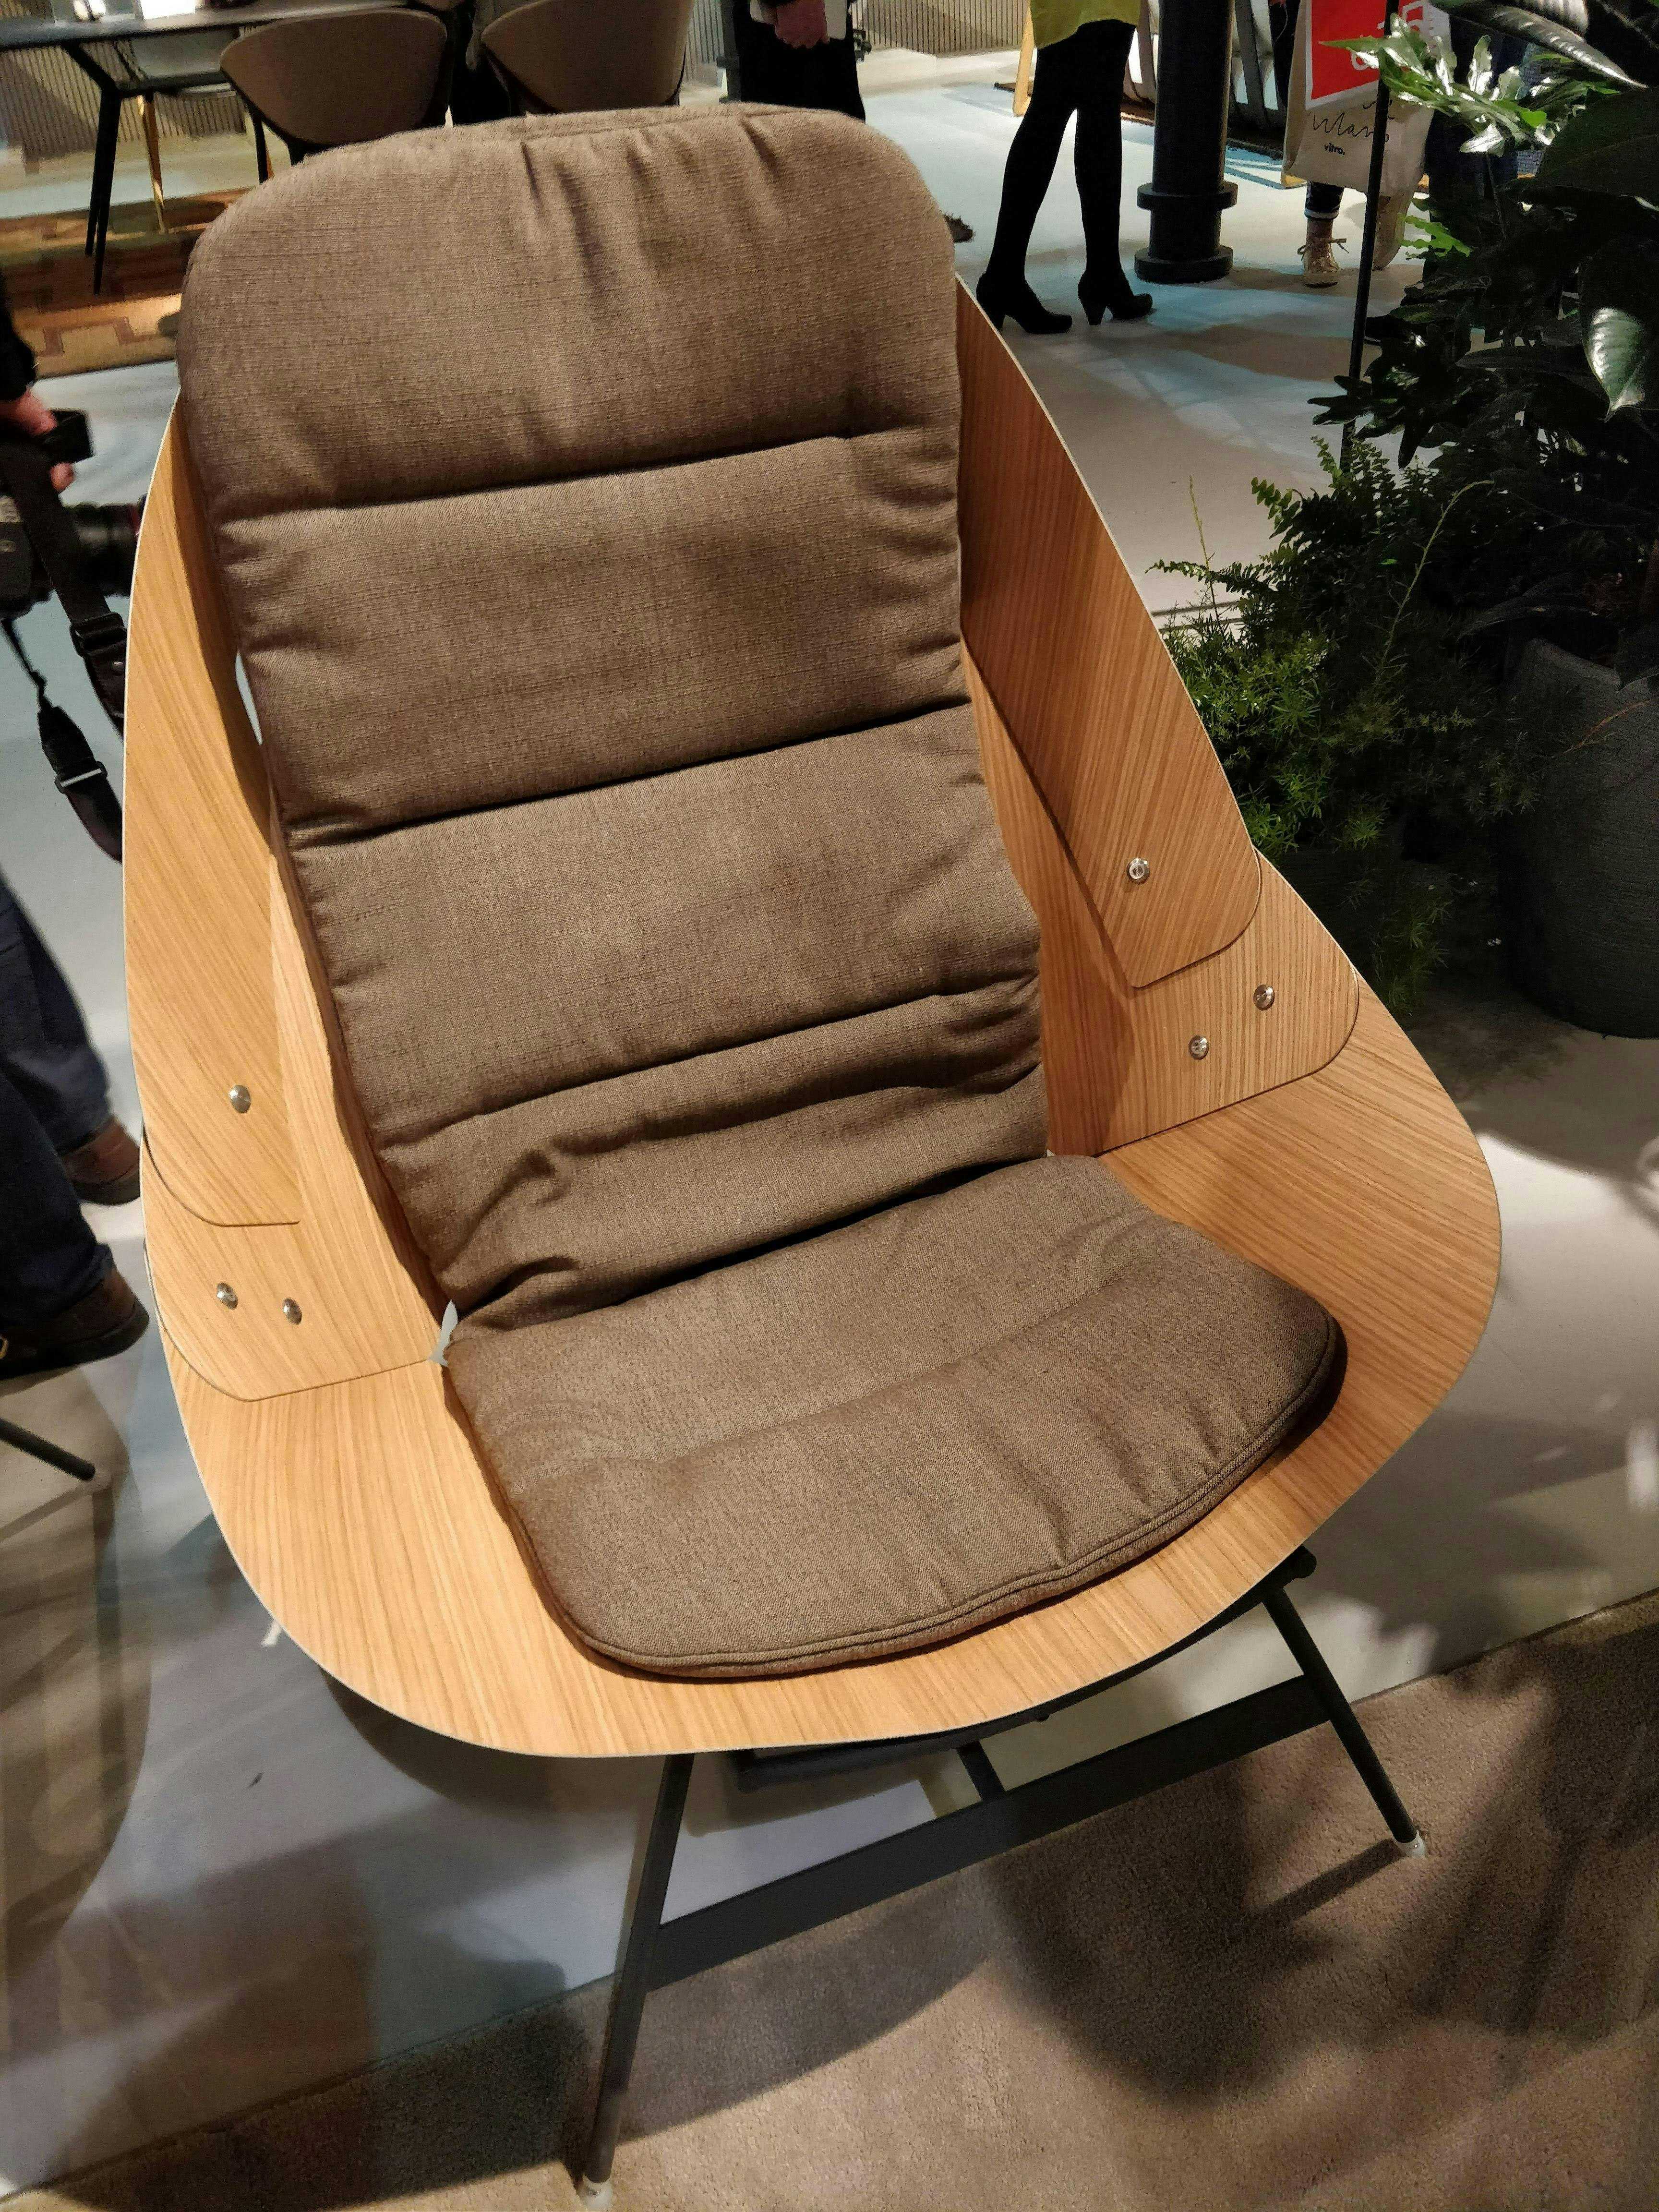 chair furniture person human armchair